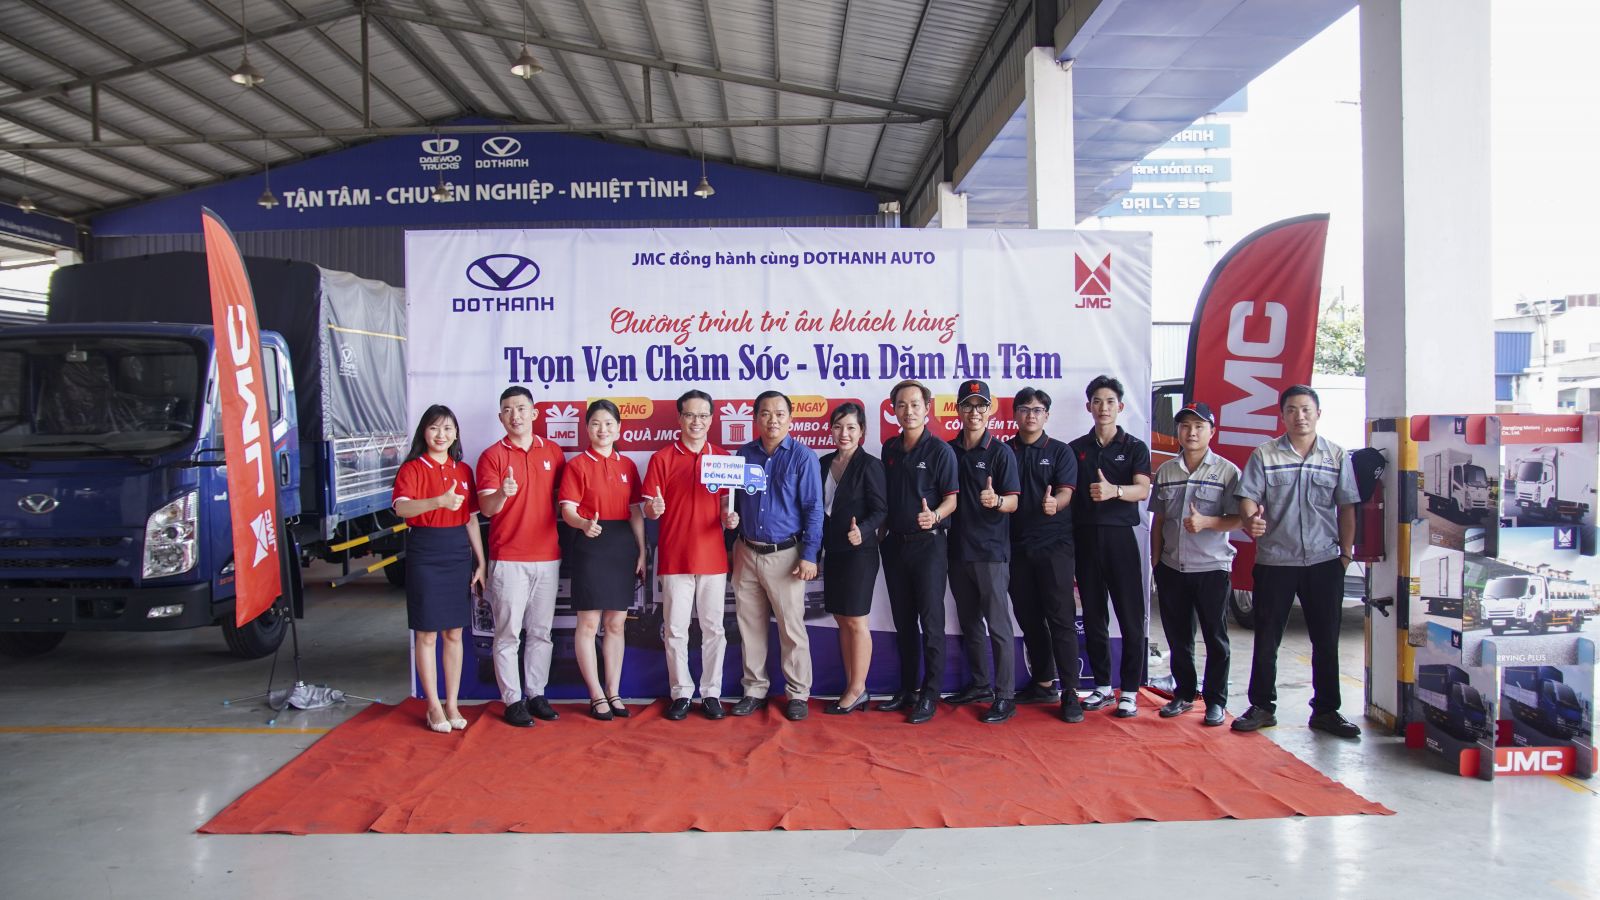 Chương trình tri ân khách hàng sử dụng xe tải DOTHANH IZ do DoThanh Auto phối hợp cùng đối tác JMC và Đại lý Đô Thành Đồng Nai thực hiện